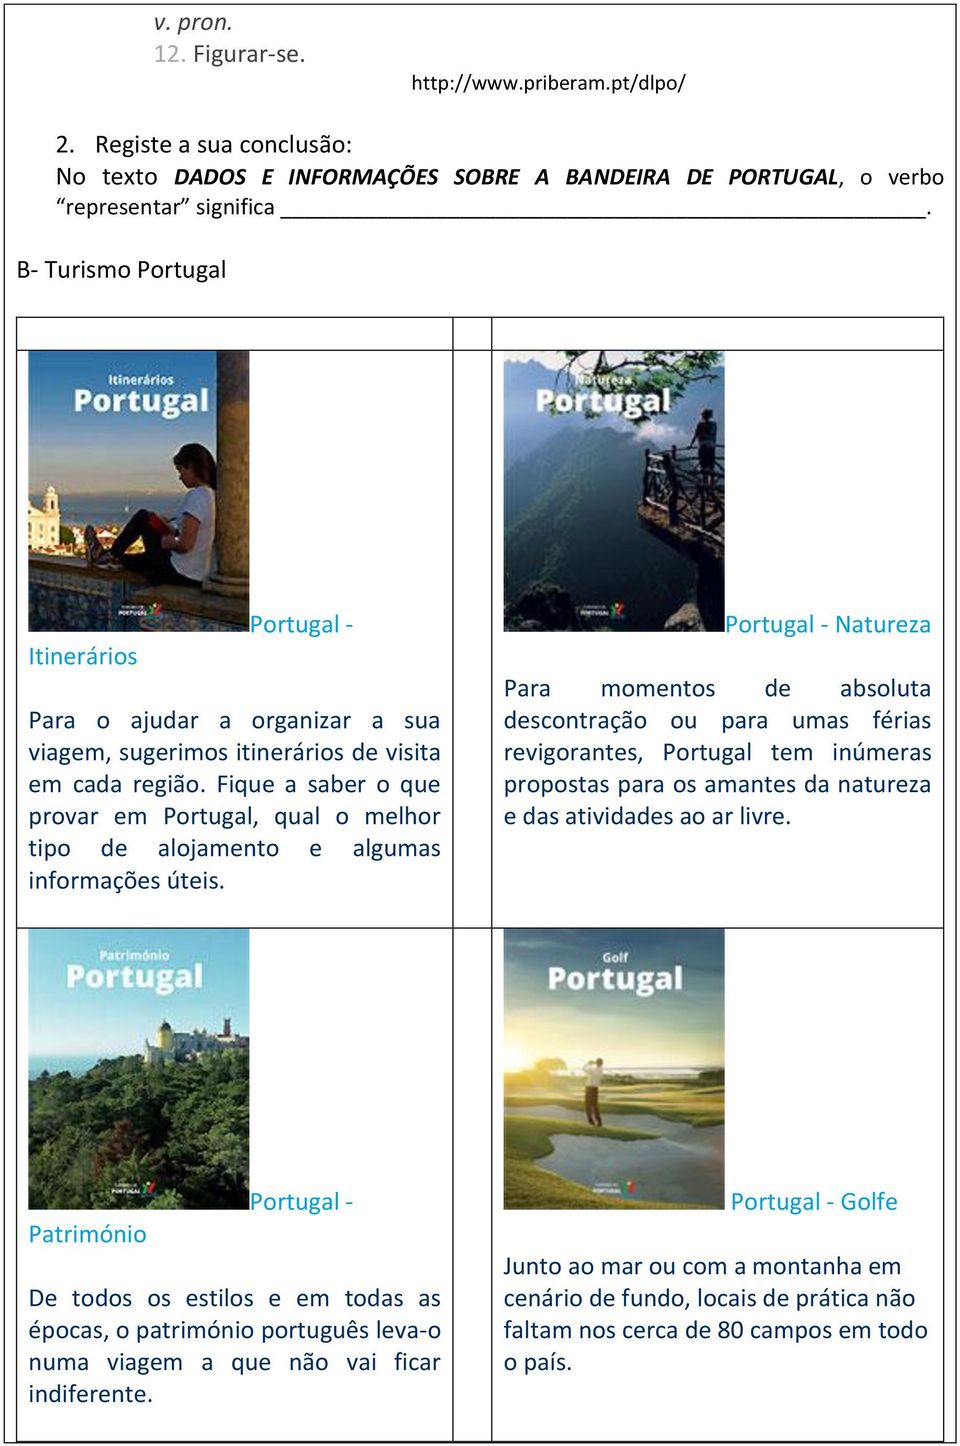 Fique a saber o que provar em Portugal, qual o melhor tipo de alojamento e algumas informações úteis.